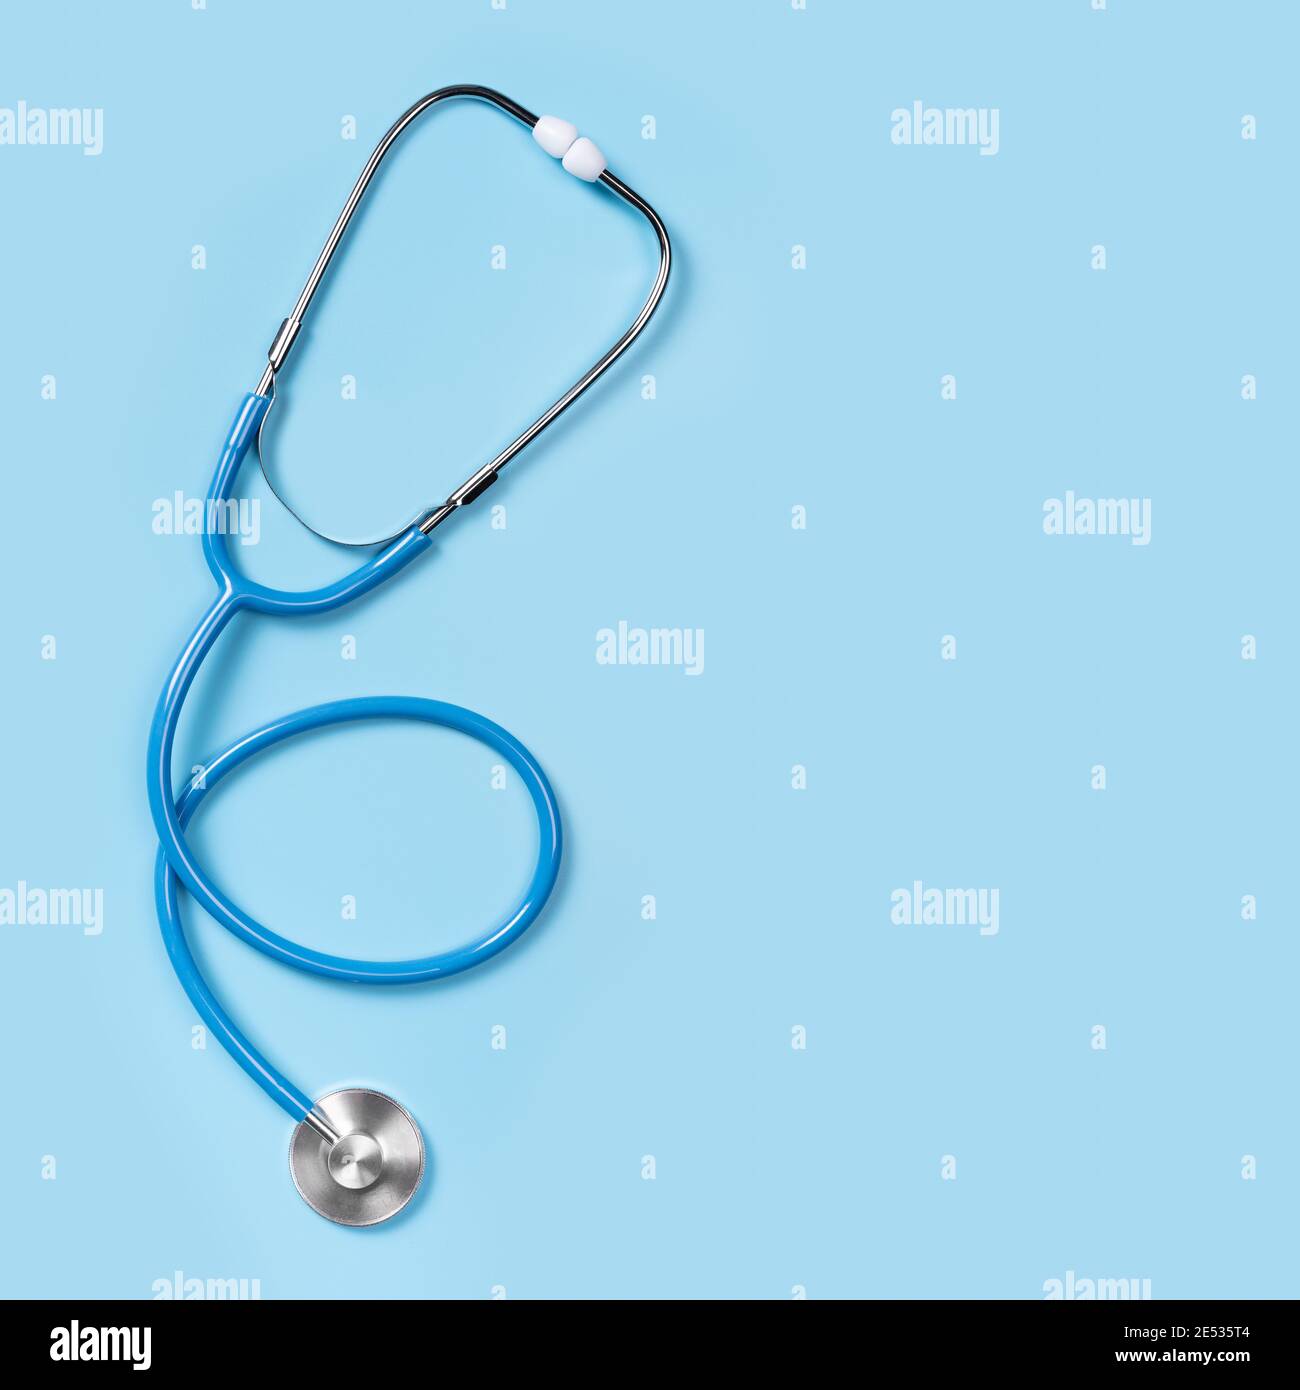 Stethoskop isoliert auf blauem Hintergrund, Draufsicht. Medizinisches Werkzeug. Stethoskop ist ein wichtiges diagnostisches Werkzeug für einen Arzt. Flach liegend, Draufsicht, Kopie sp Stockfoto